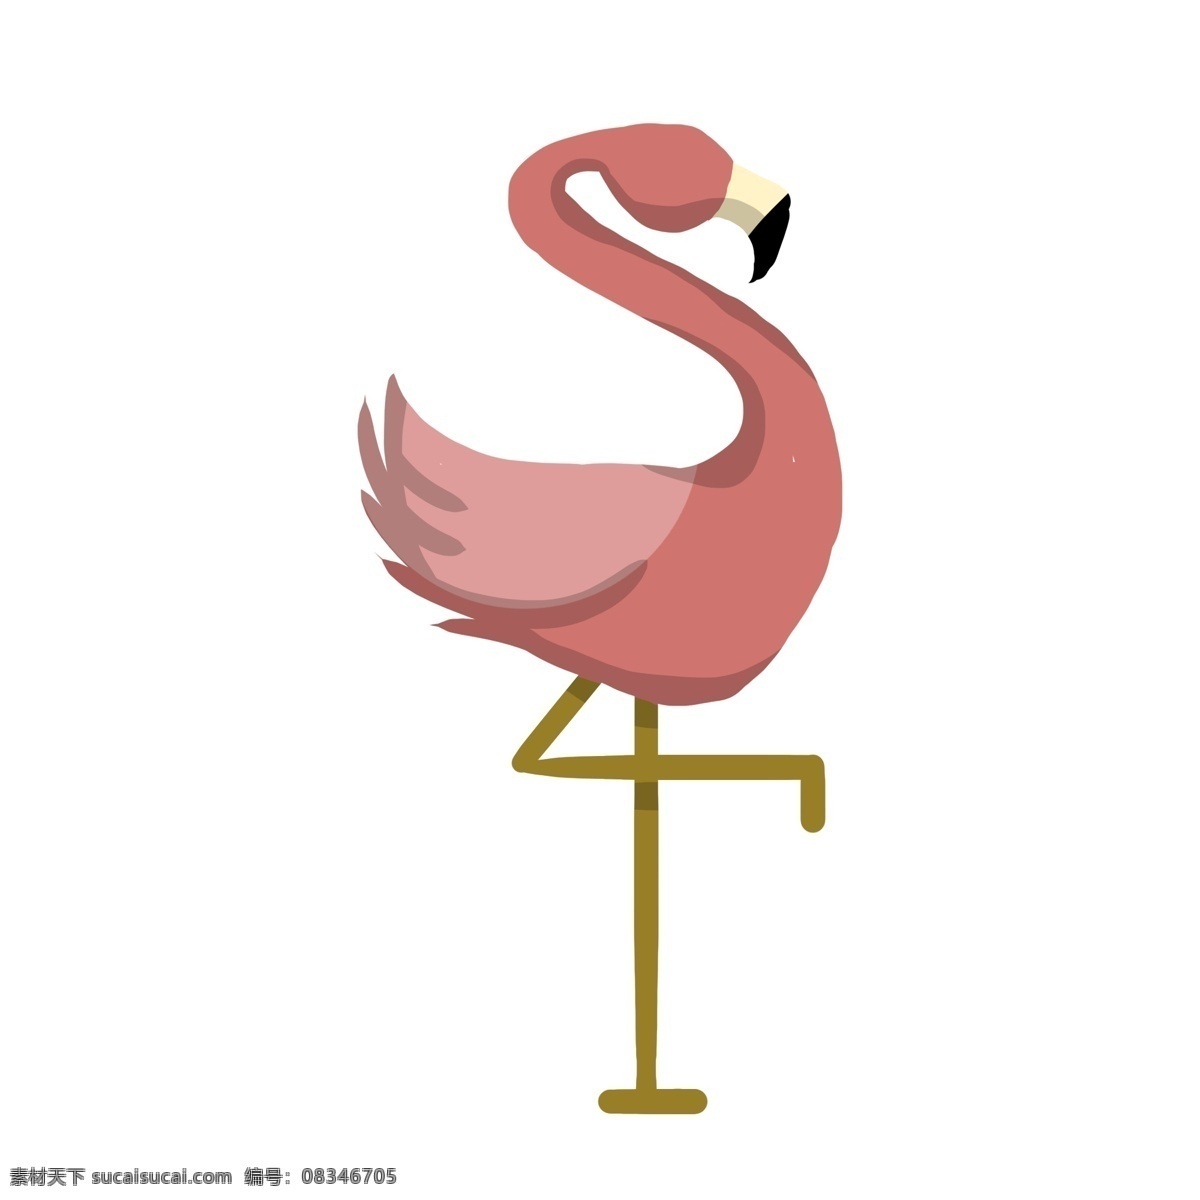 粉红色 火烈鸟 开头的 简约风格